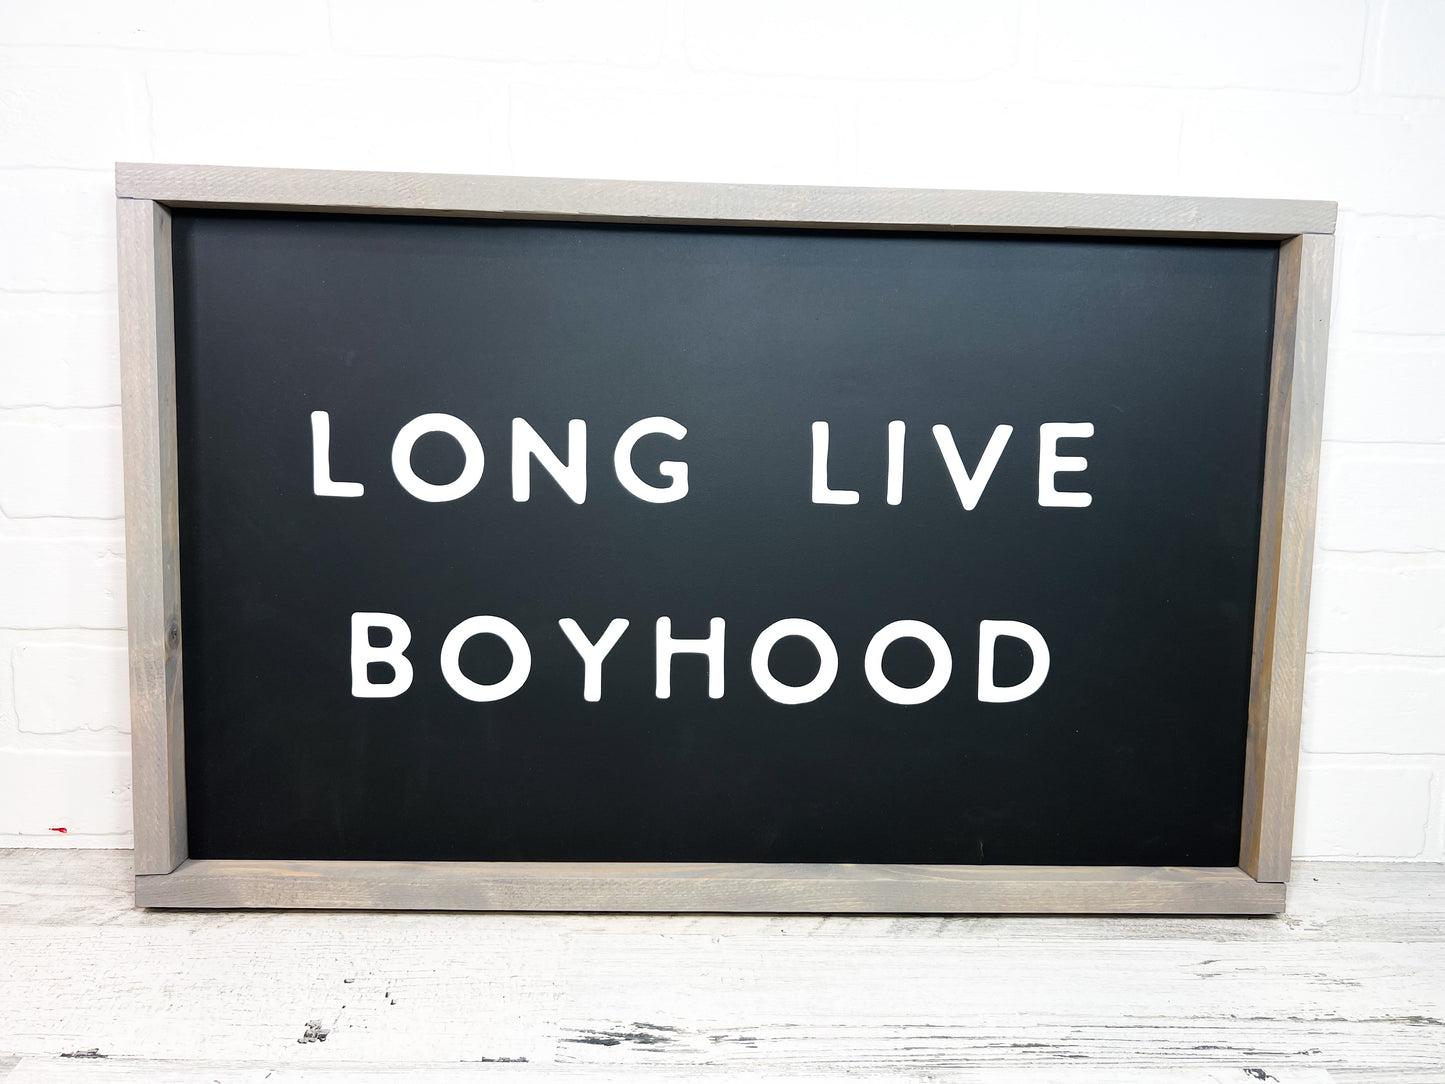 LONG LIVE BOYHOOD